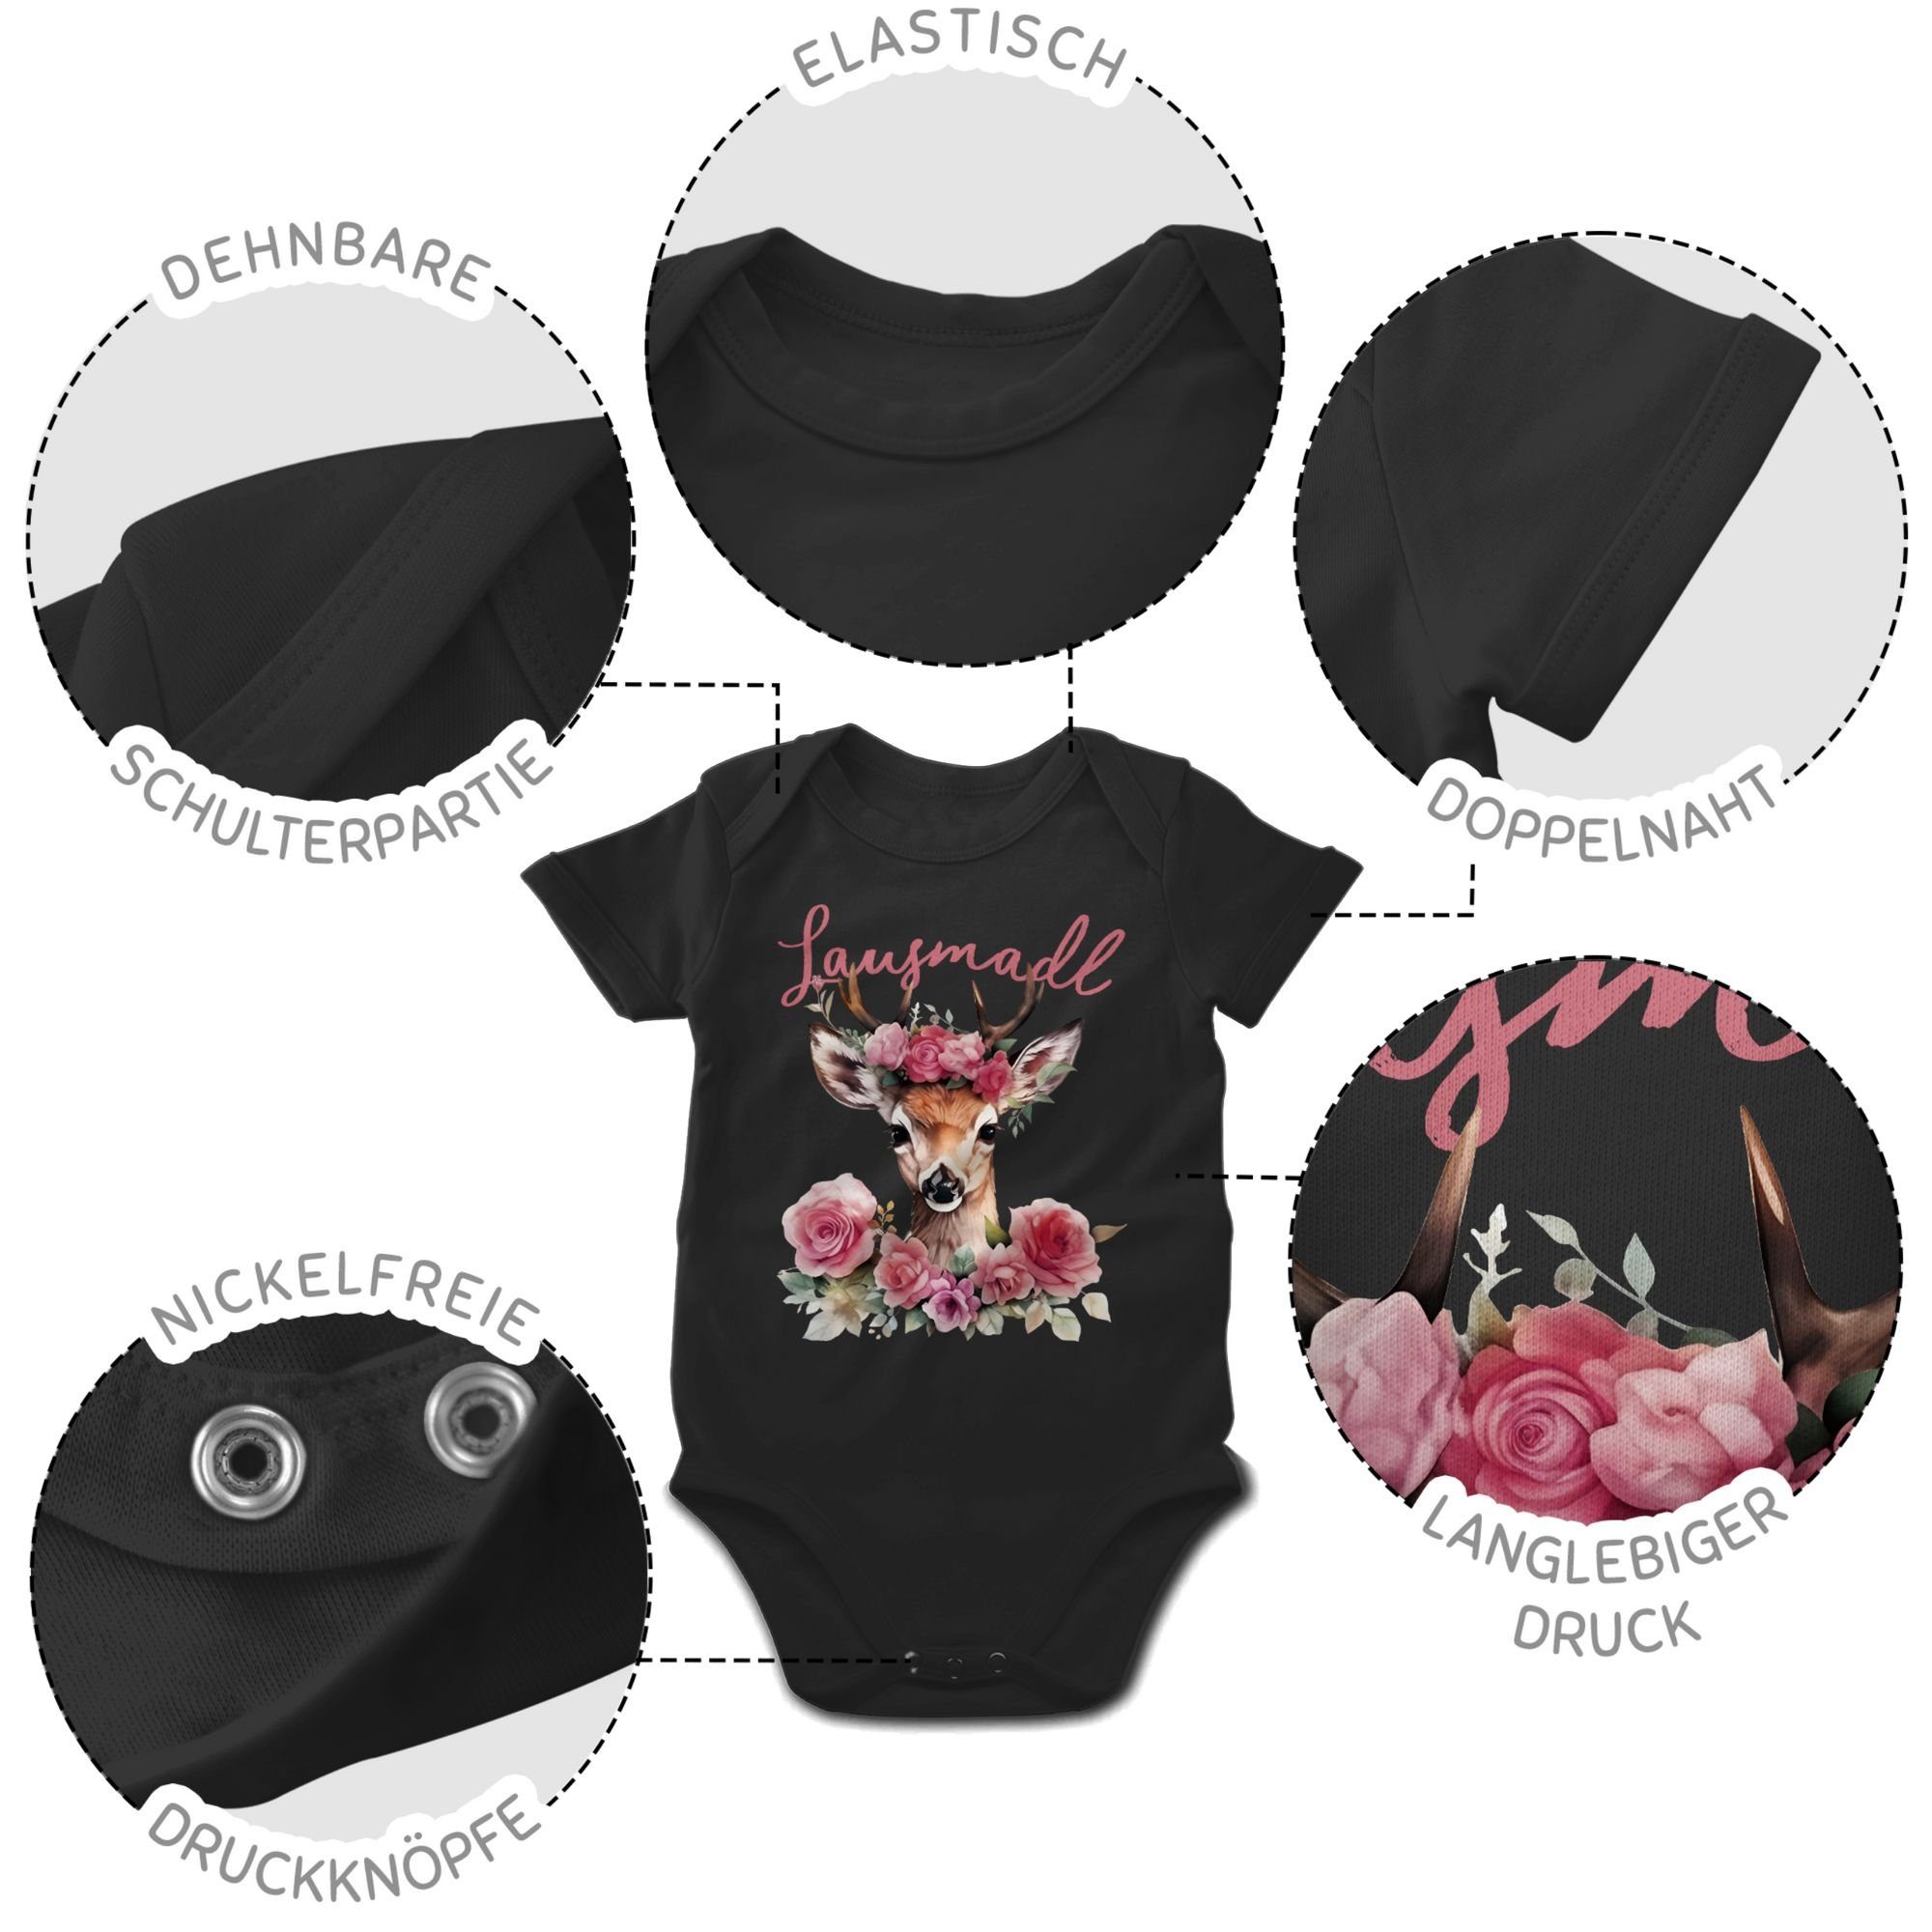 Freches Lousy 3 Reh für Oktoberfest Baby Mädchen G Shirtbody Lausemädchen Geweih Lausmadl Shirtracer Outfit Schwarz Lausmädchen Mode -